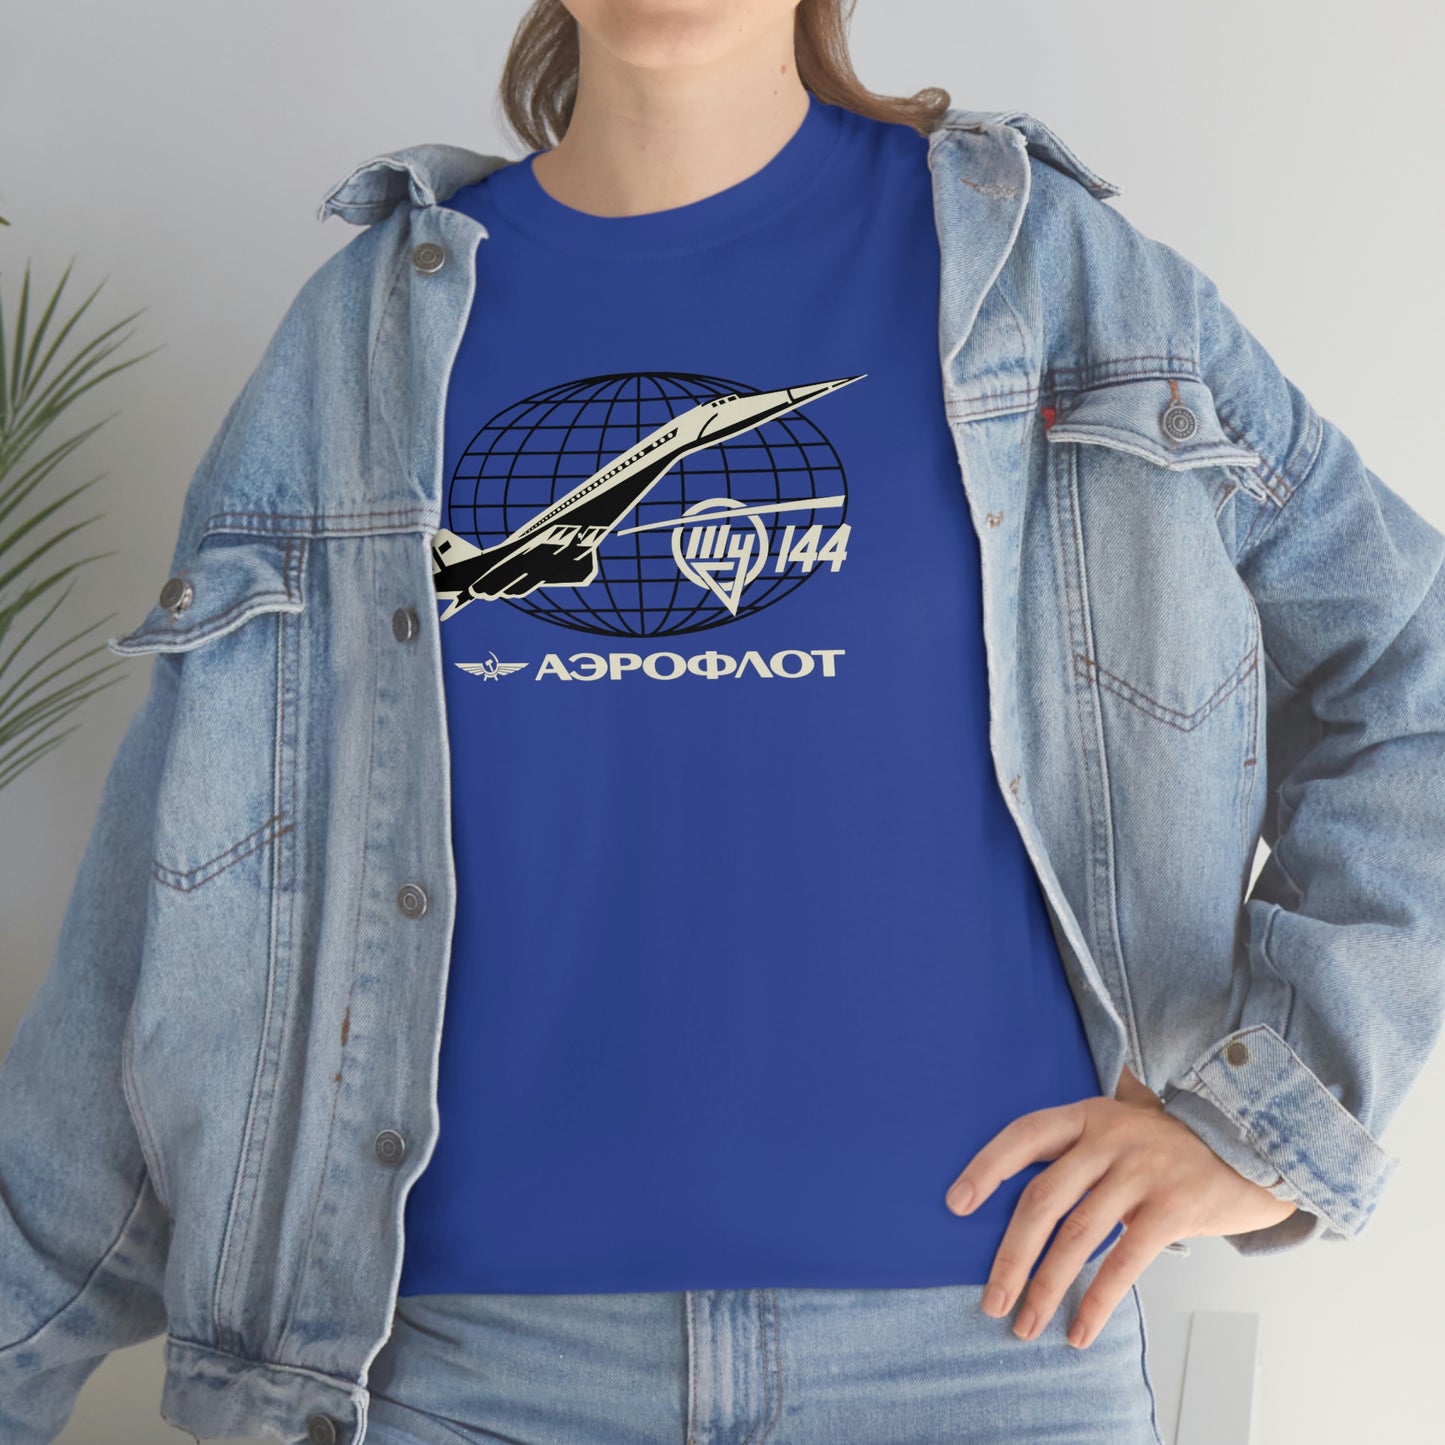 Aeroflot TU-144 T-Shirt